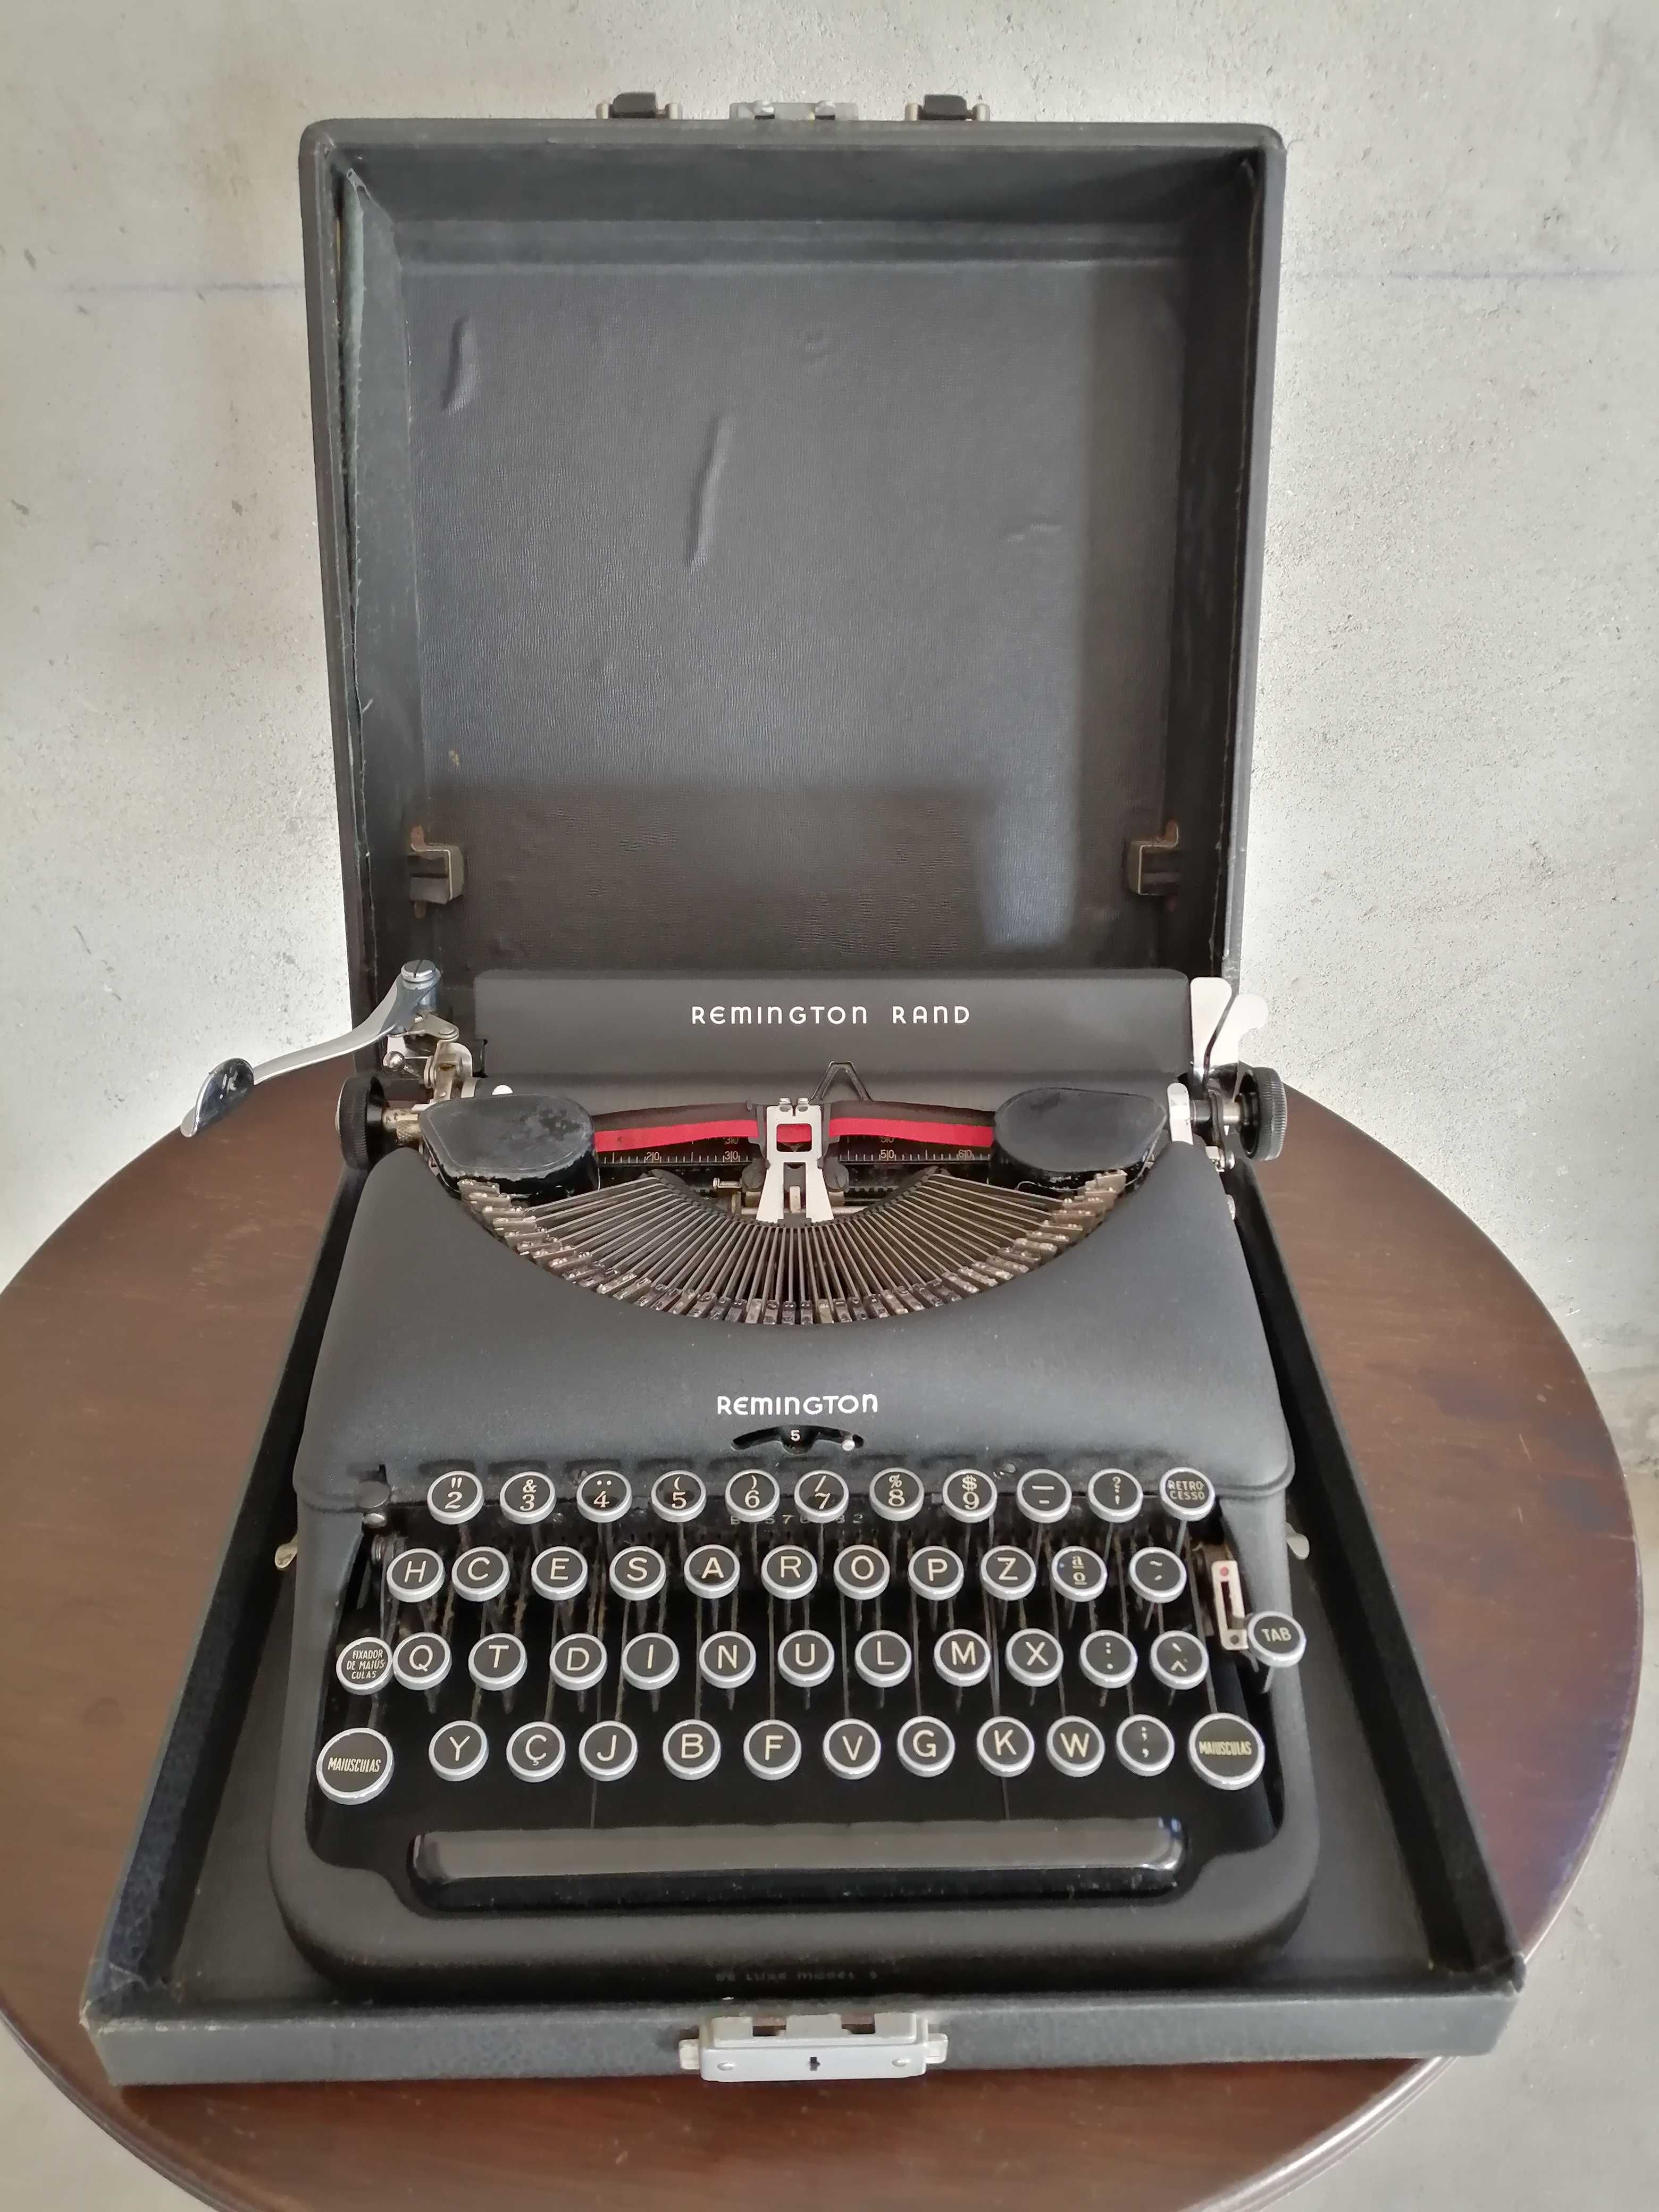 Máquina de escrever Remington Rand